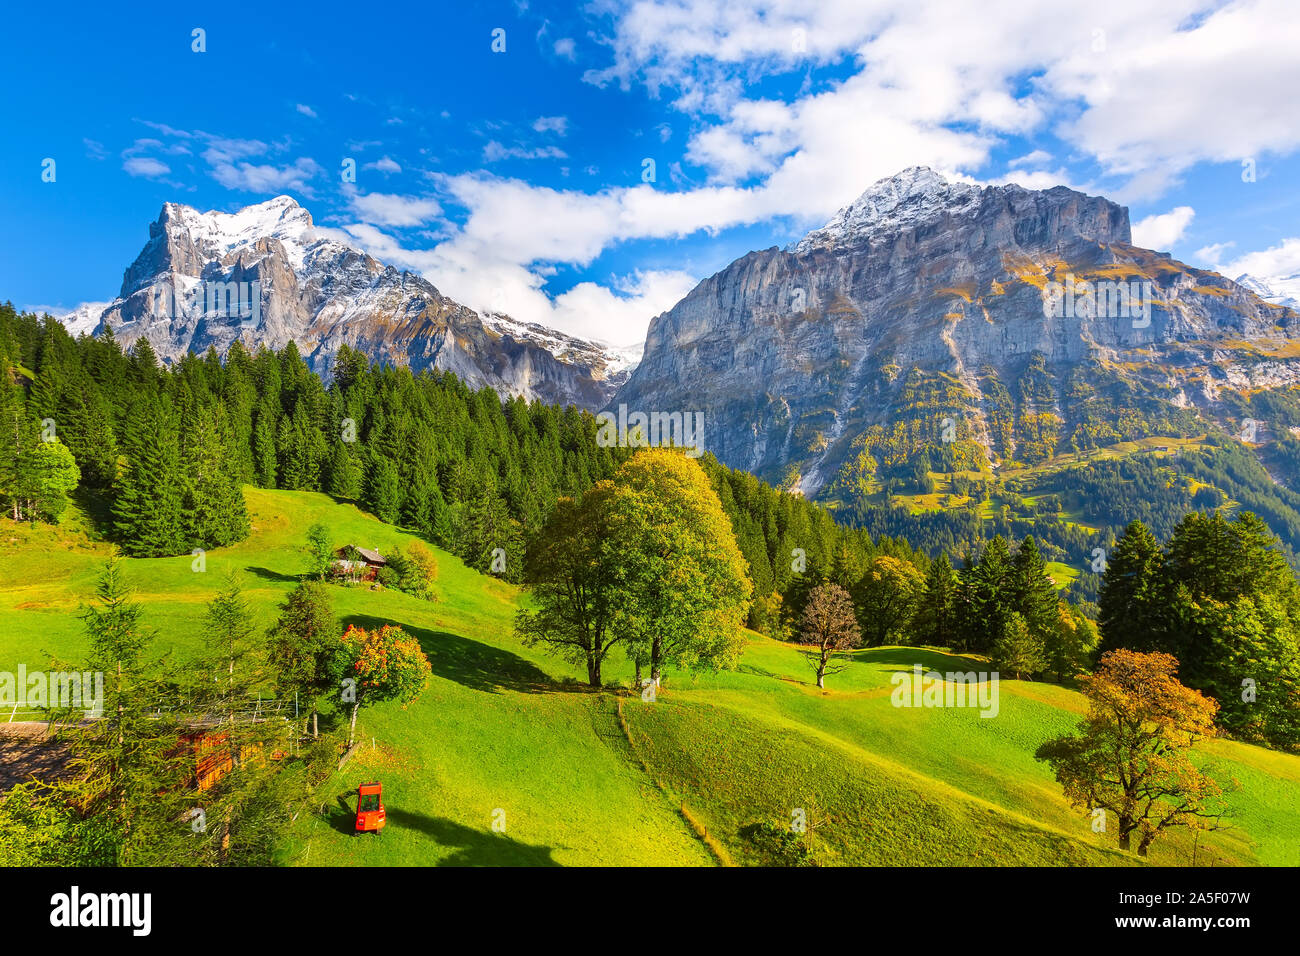 Grindelwald, Svizzera antenna vista del villaggio e autunno Alpi Svizzere Montagne Paesaggio panorama, chalets in legno su campi verdi e alte vette nel retro Foto Stock